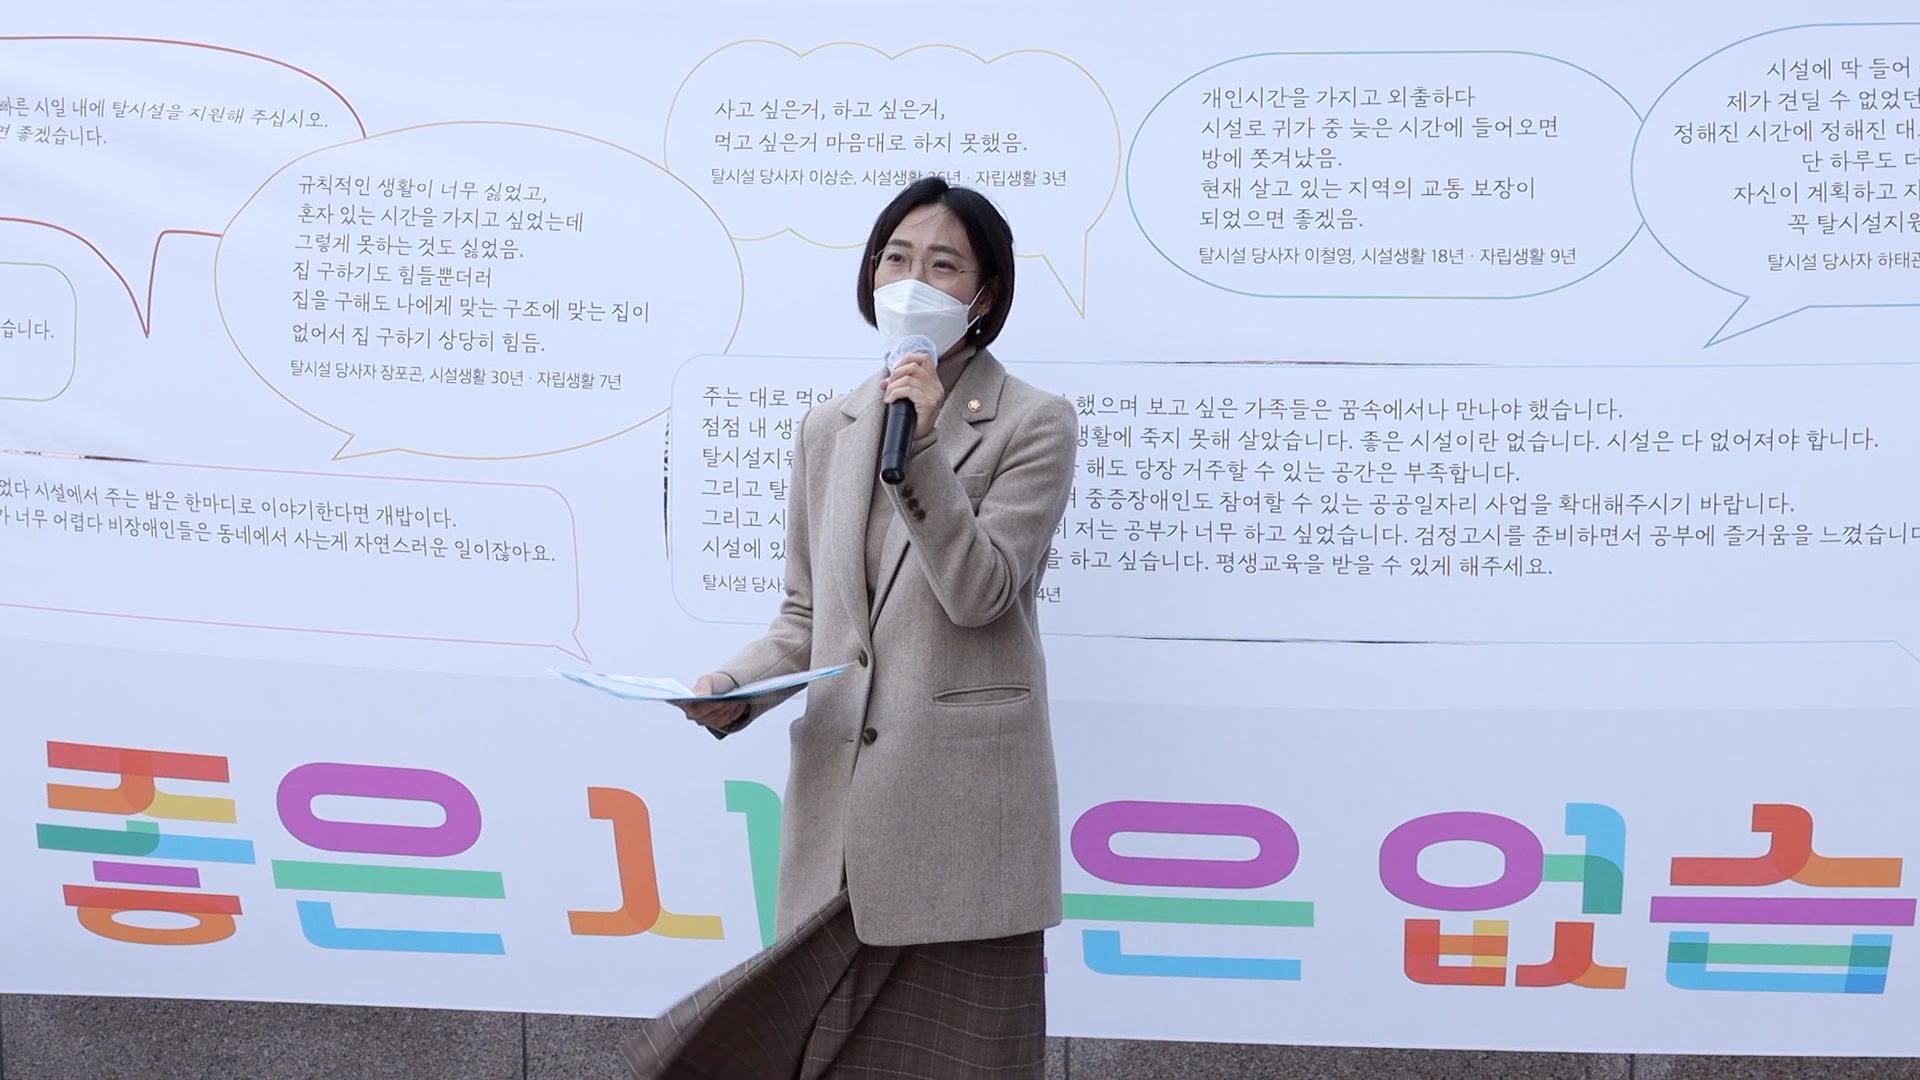 장애인탈시설법 제정 촉구를 위한 100인 선언 기자회견에서 발언 중인 장혜영 의원의 모습